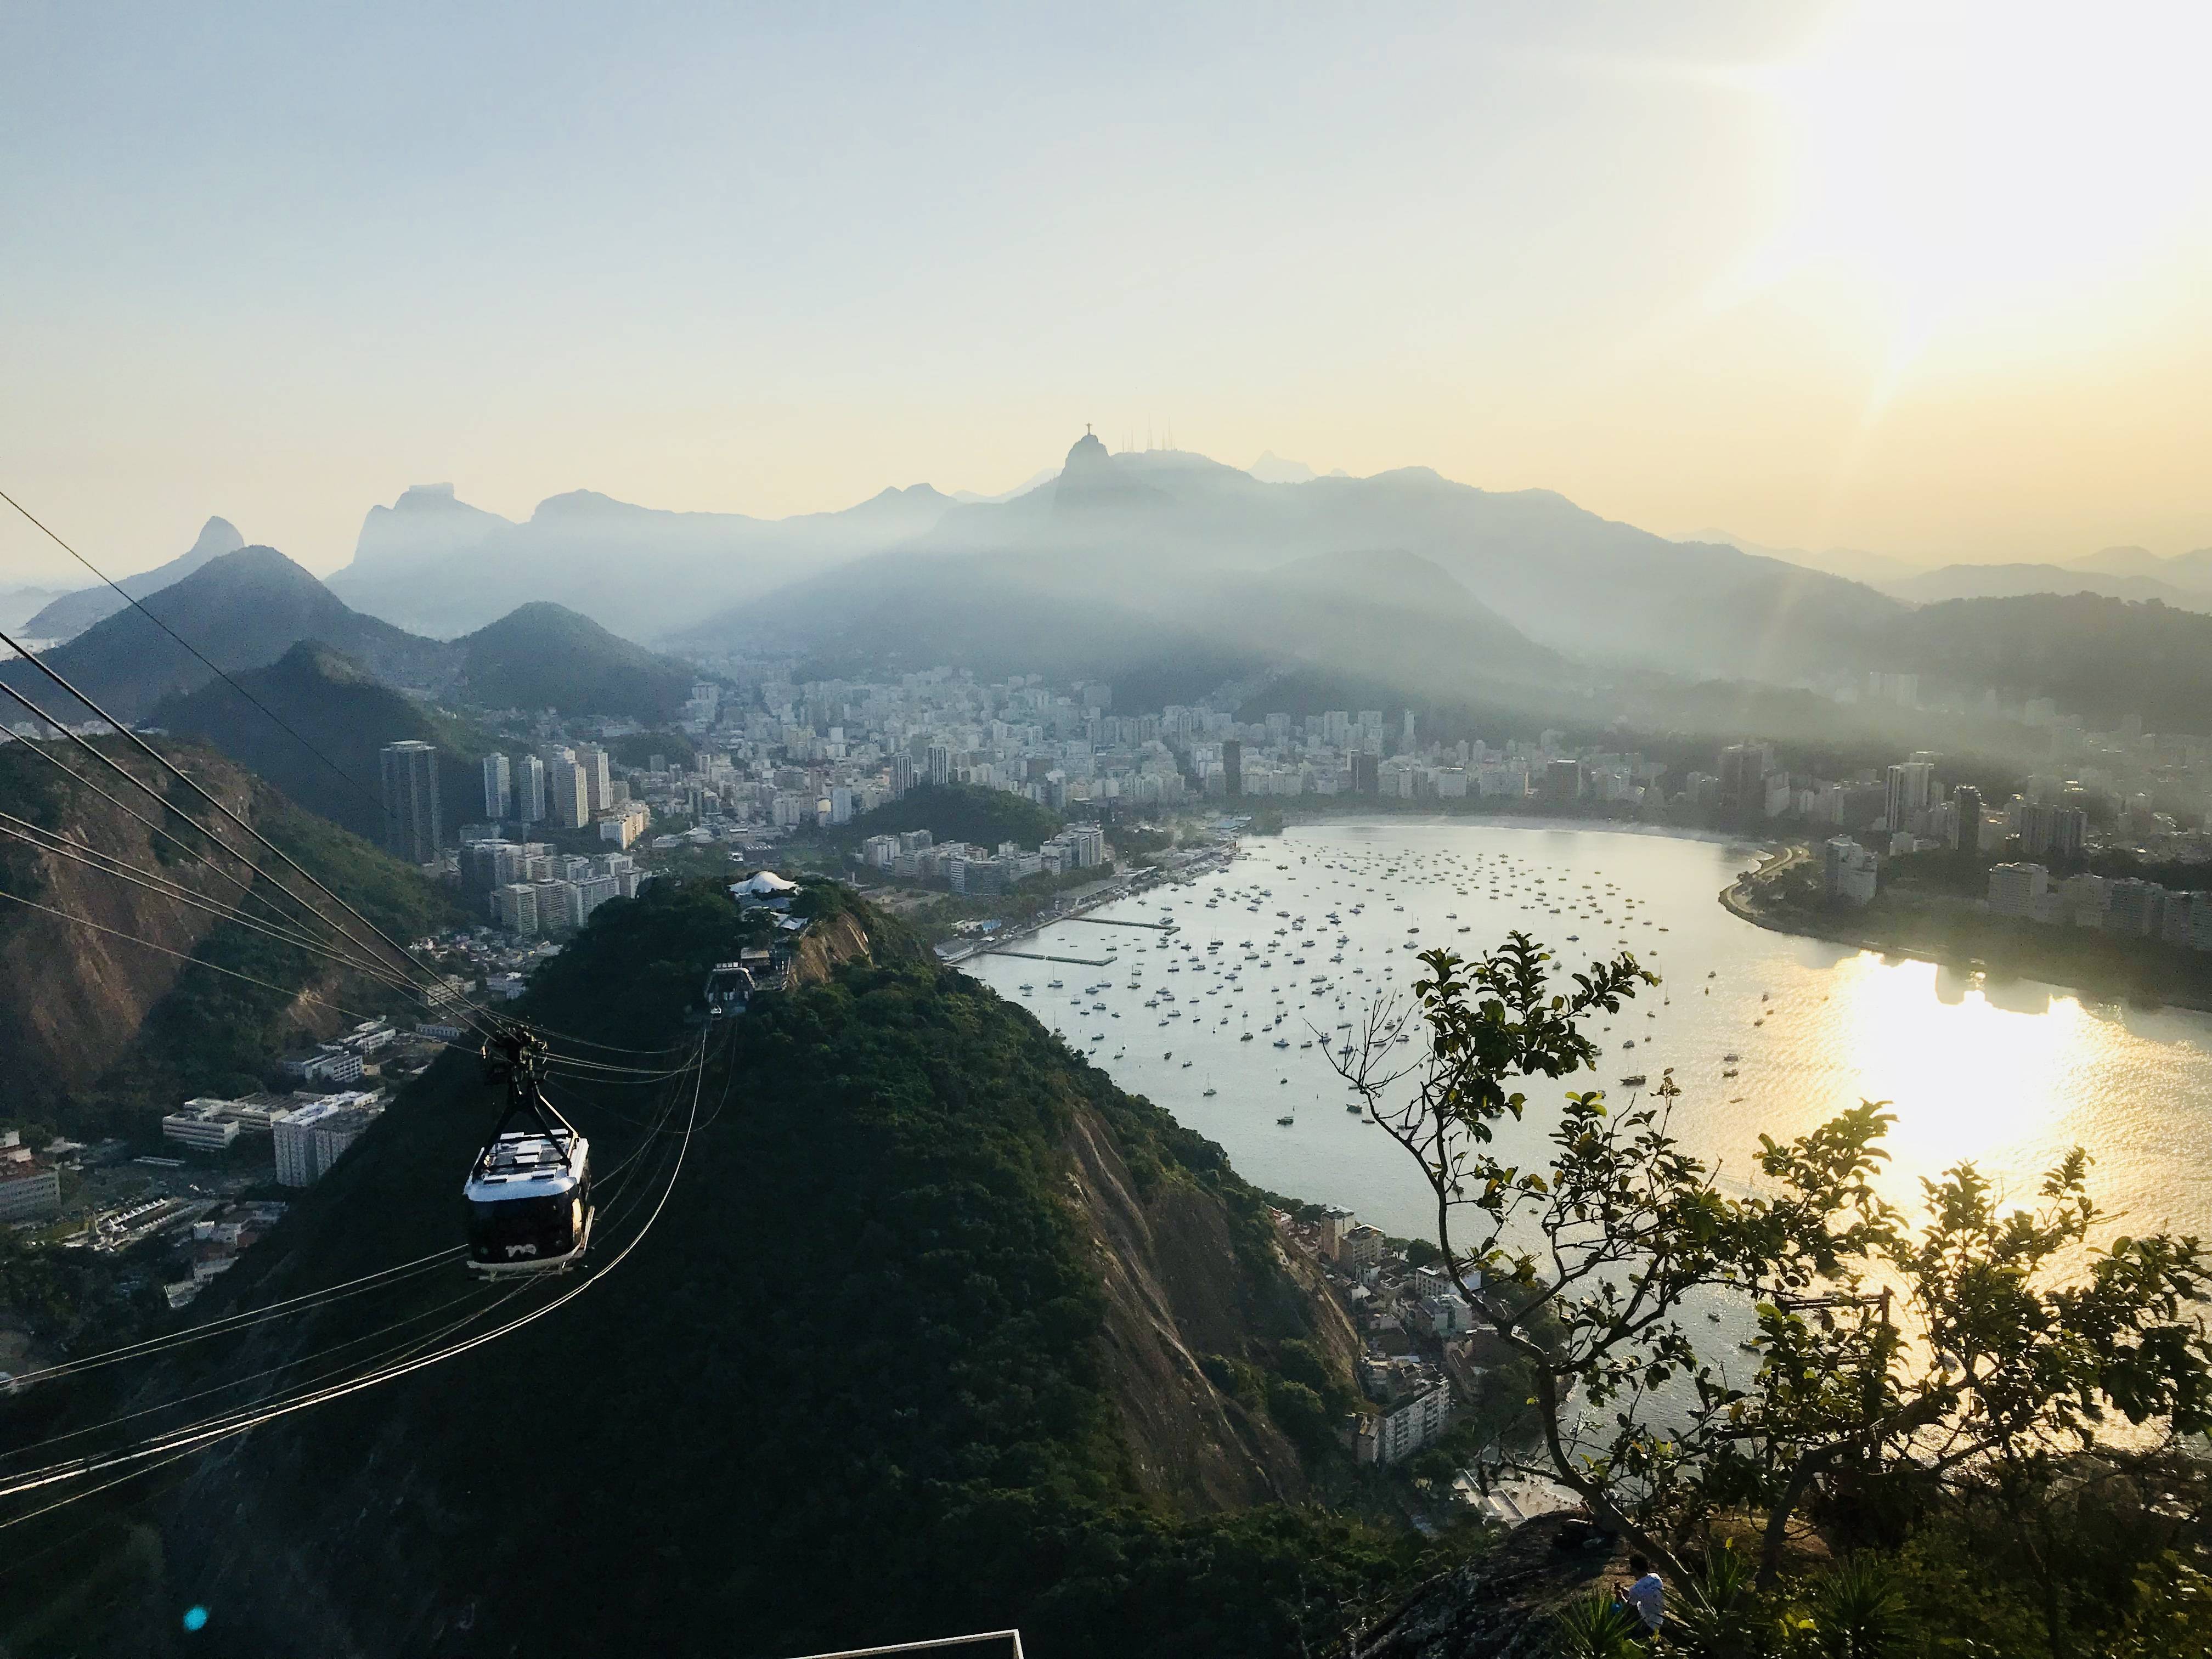 Things to do in Rio de Janeiro - Sugarloaf Mountain